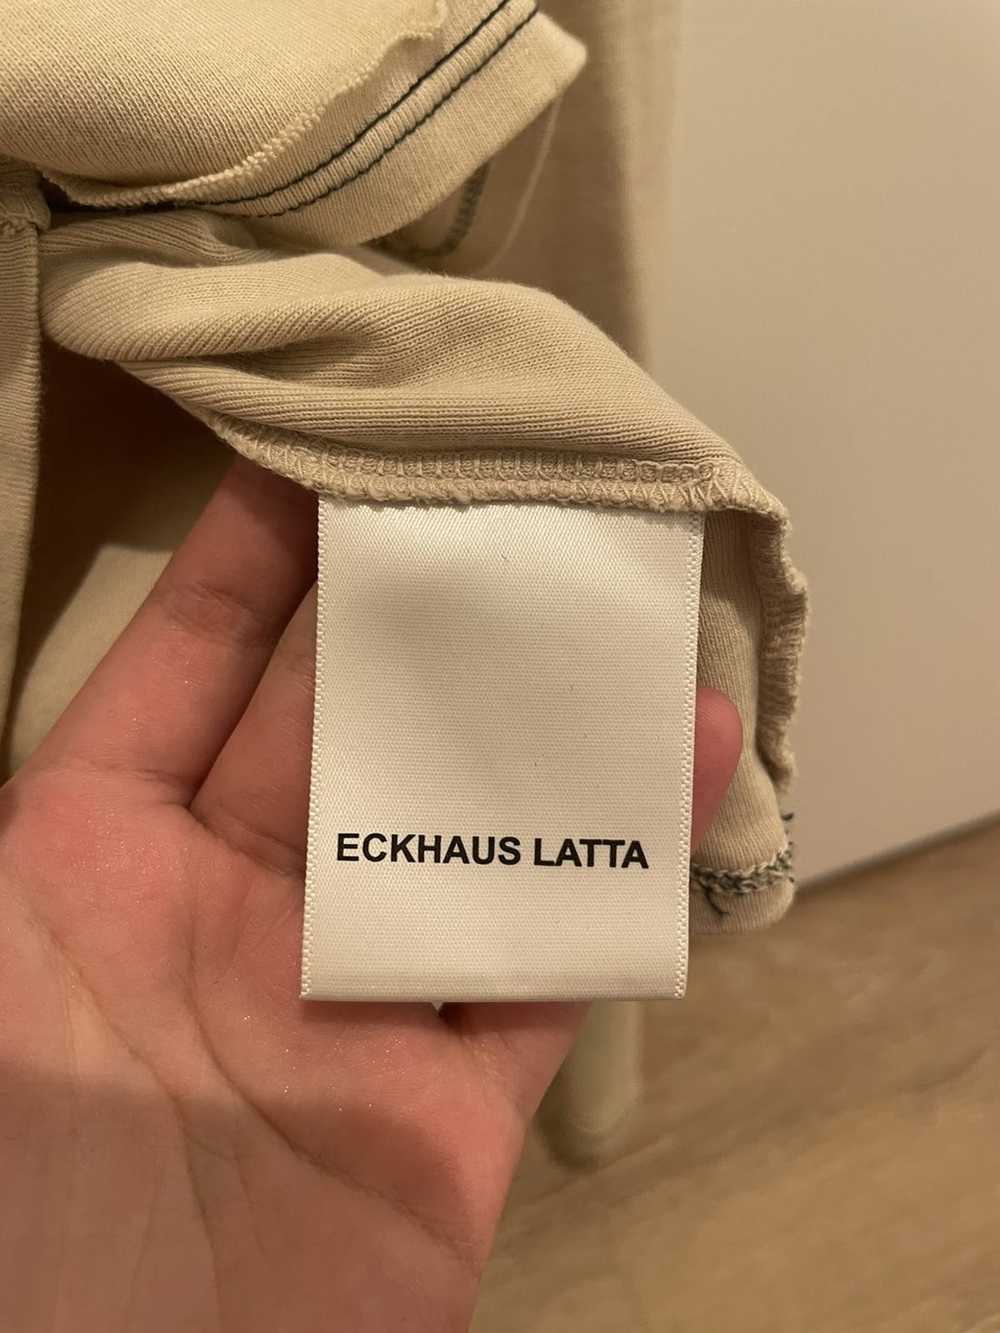 Eckhaus Latta ECKHAUS LATTA long sleeve tshirt - image 4